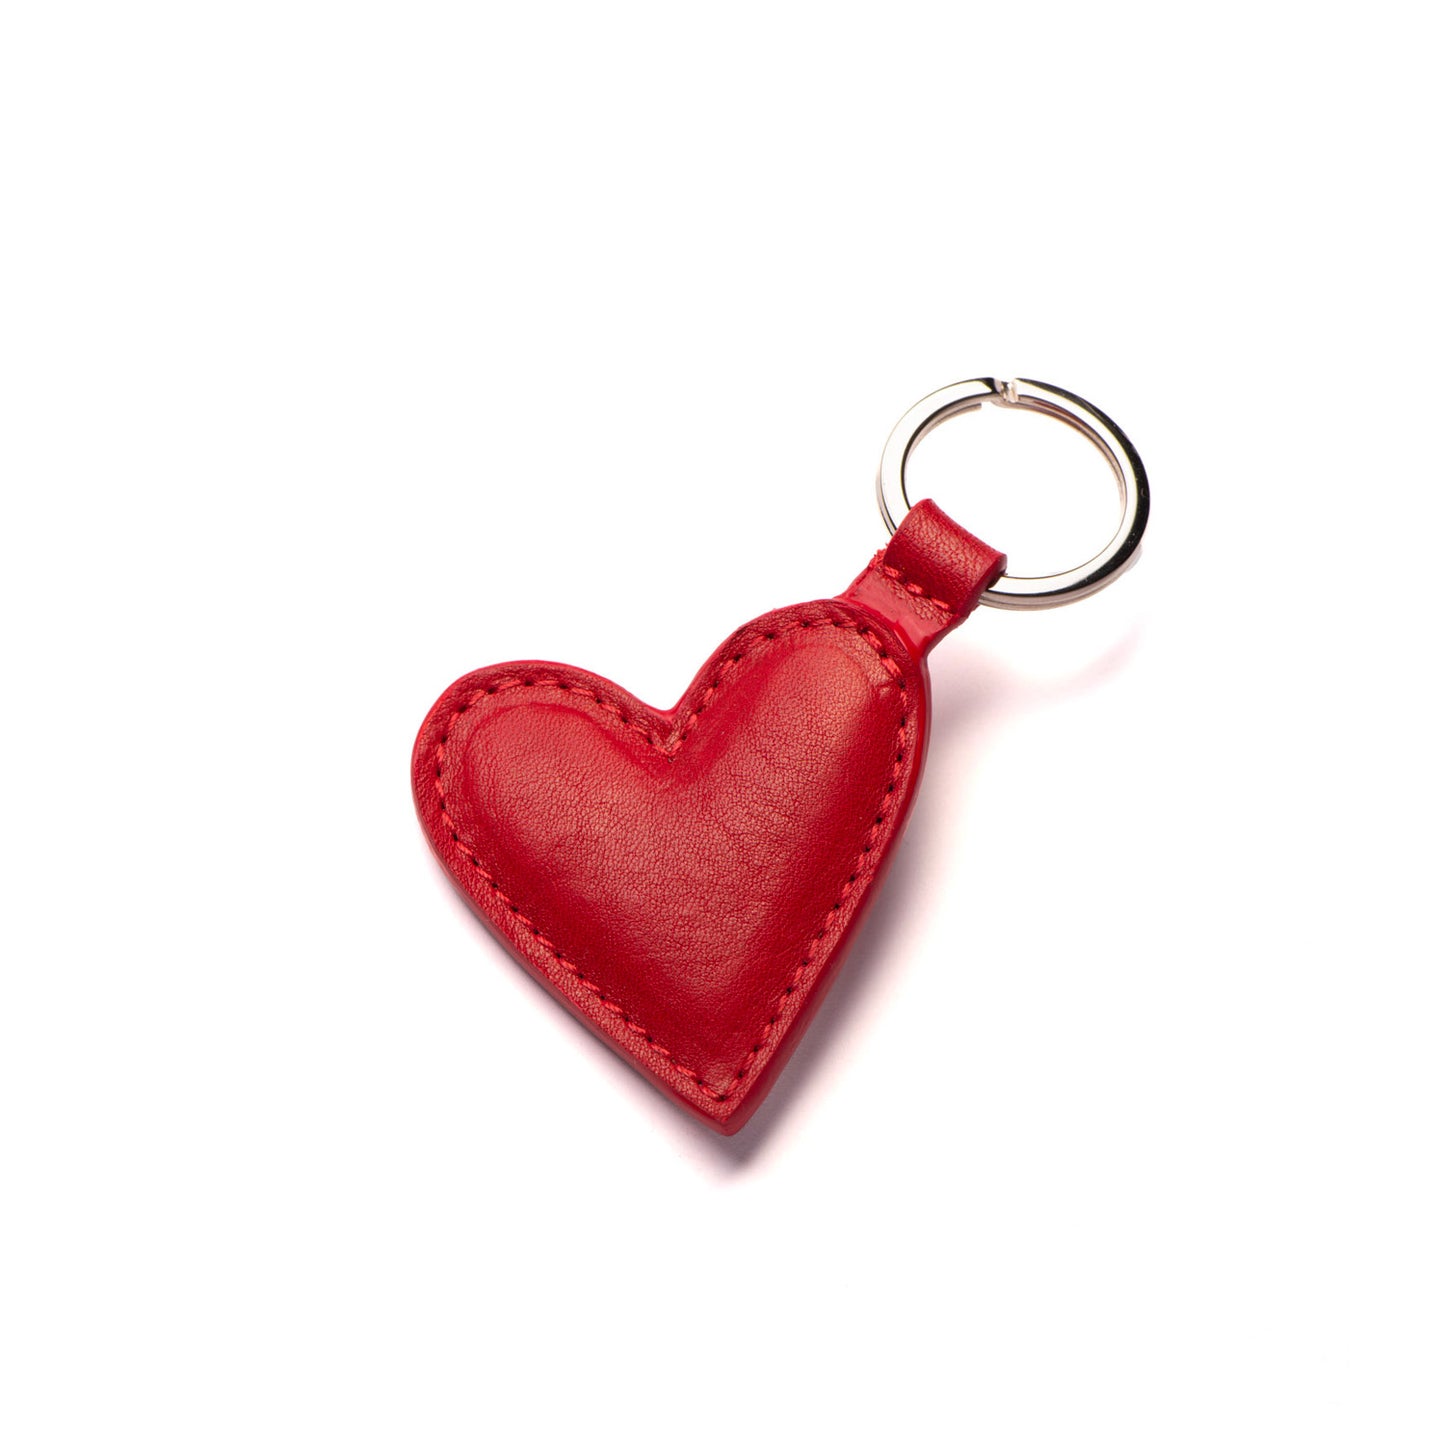 In love du porte-clé coeur en cuir rouge tannage végétal. N'attendez pas la saint-valentin, c'est une parfaite idée cadeau personnalisable. Maroquinerie éco-responsable.